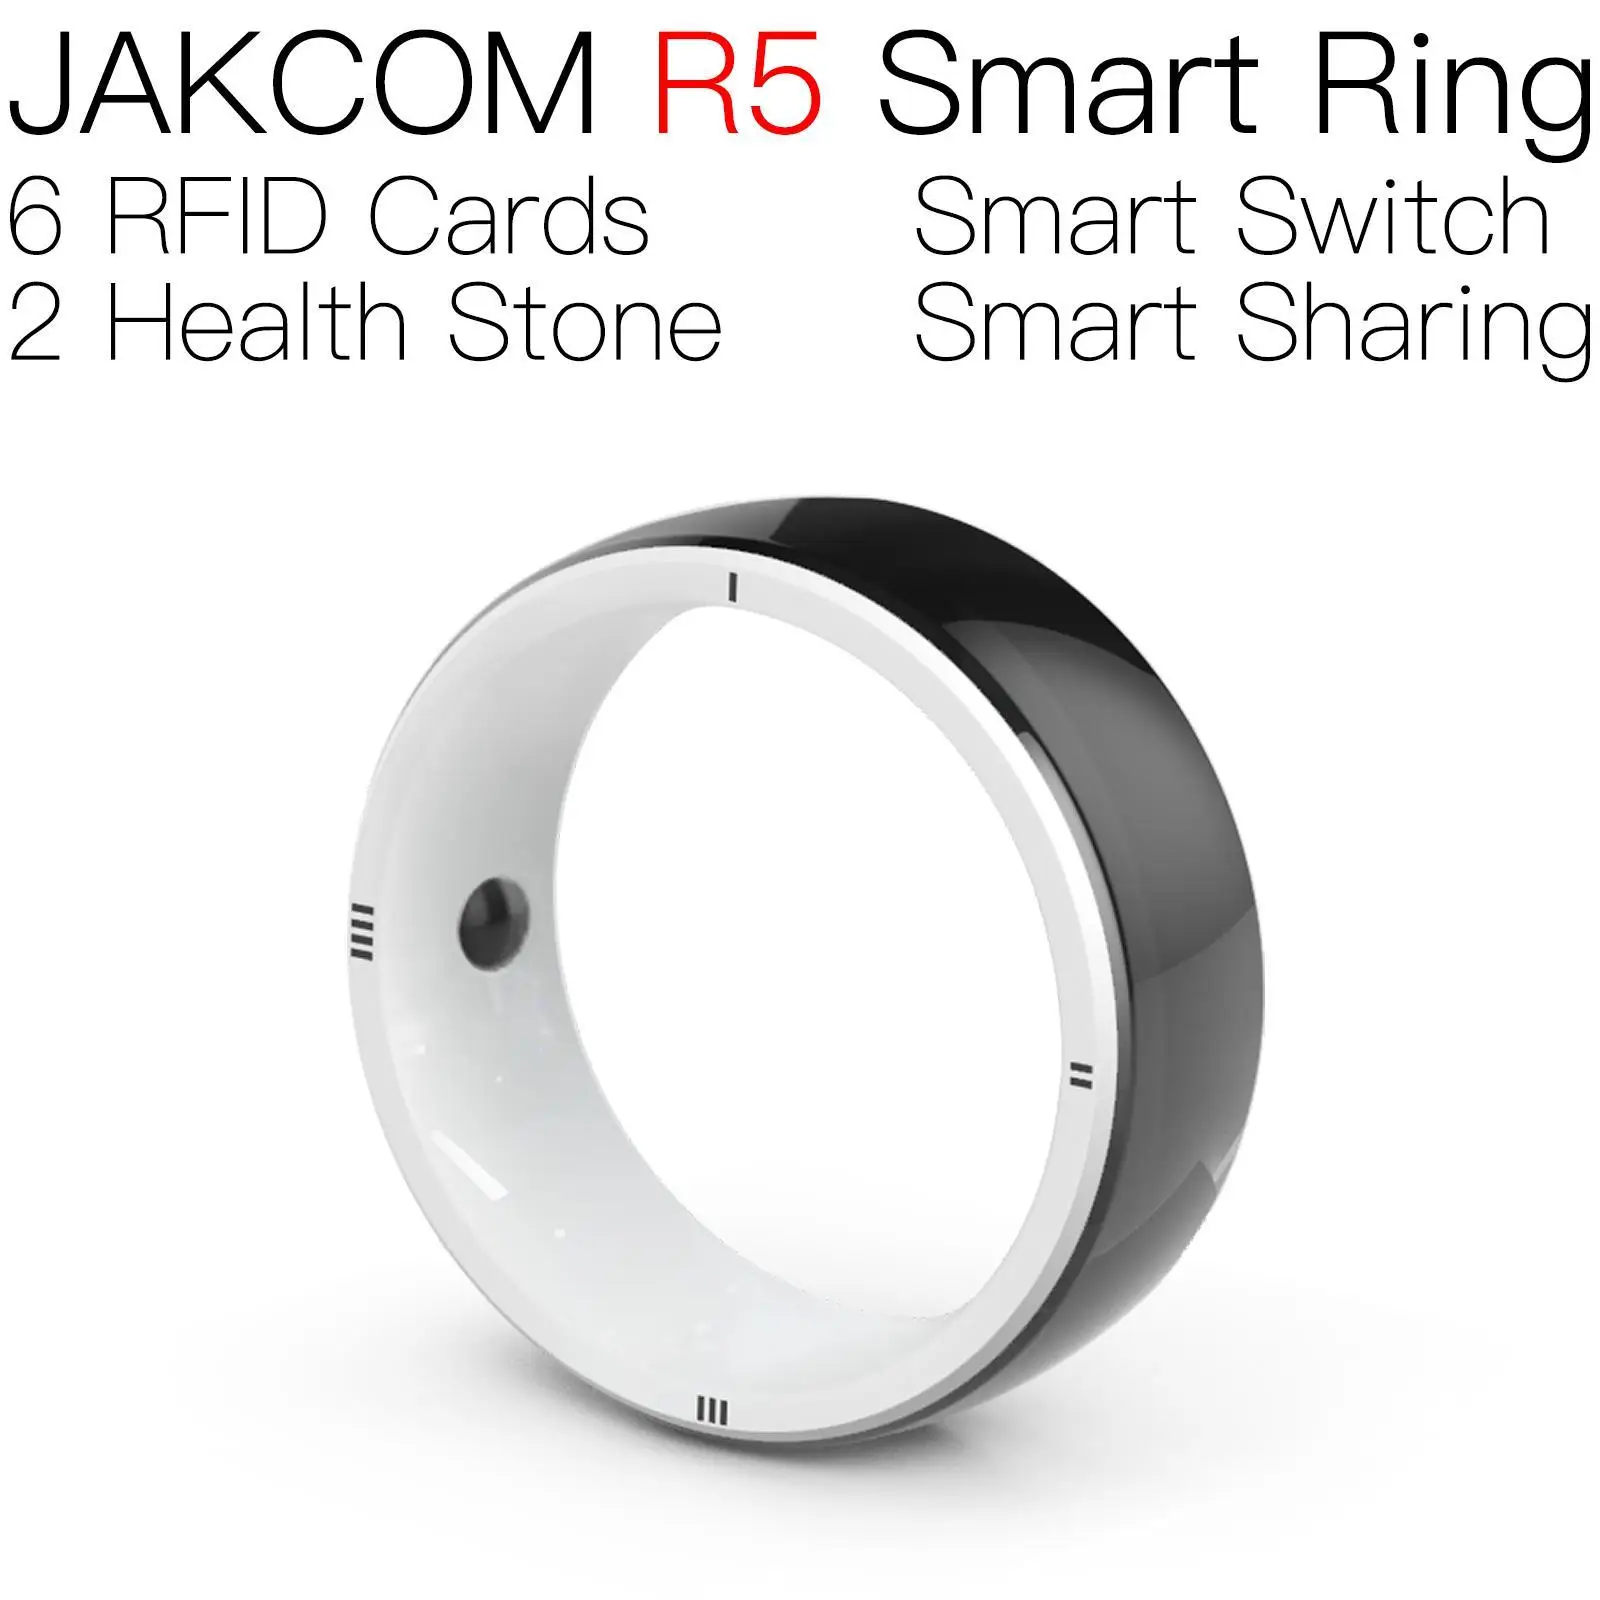 

Умное кольцо JAKCOM R5, лучший подарок с монитором rm4 pff2, загадочная электронная сетчатая катушка ecg, умные часы m6 se w66 x8 max